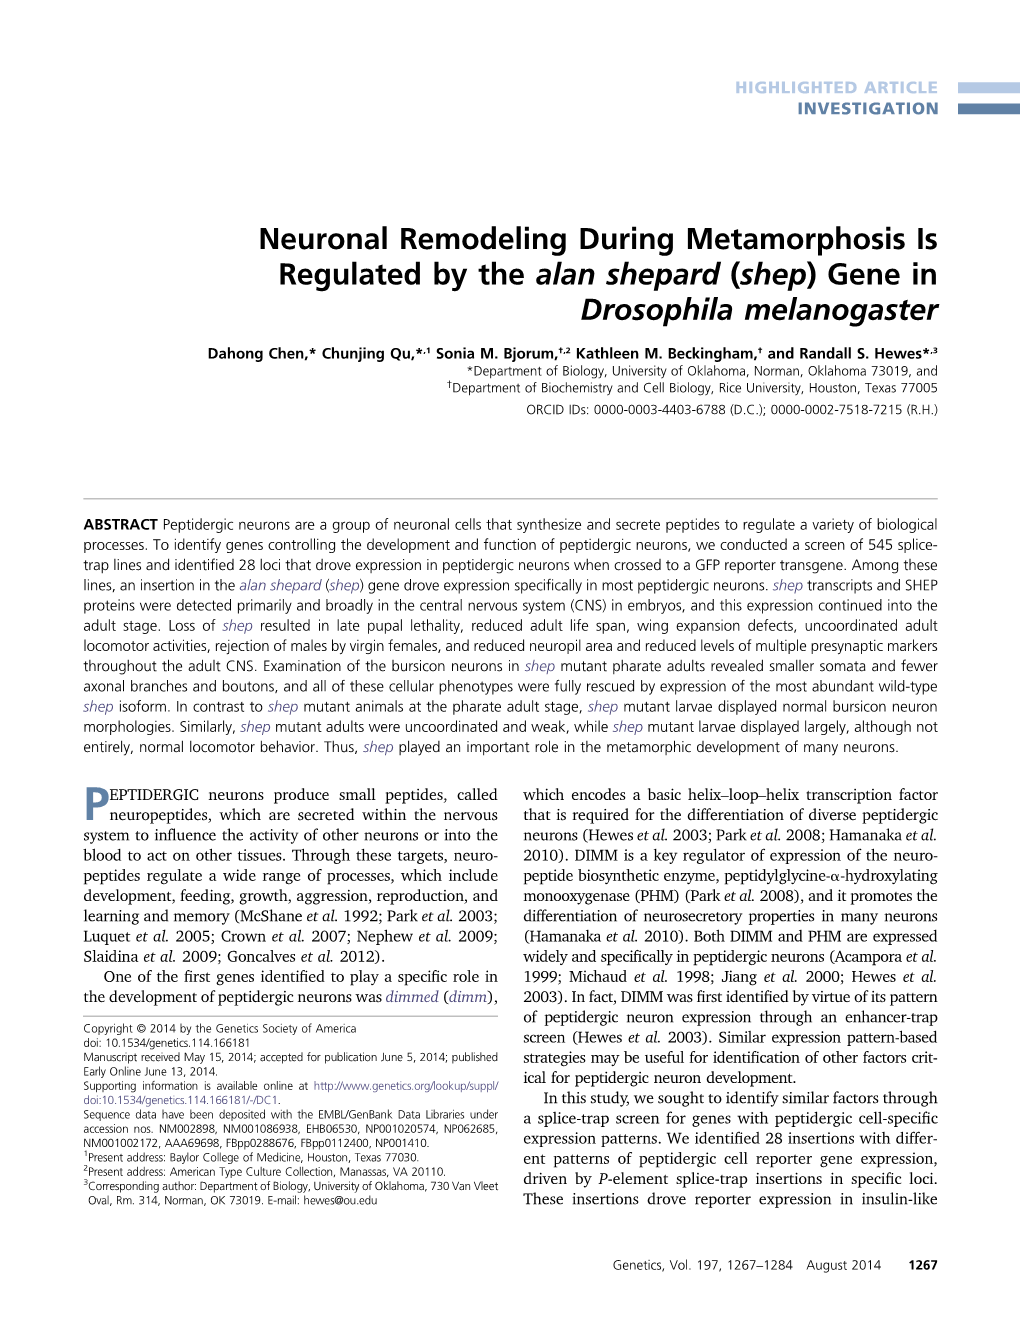 Neuronal Remodeling During Metamorphosis Is Regulated by the Alan Shepard (Shep) Gene in Drosophila Melanogaster